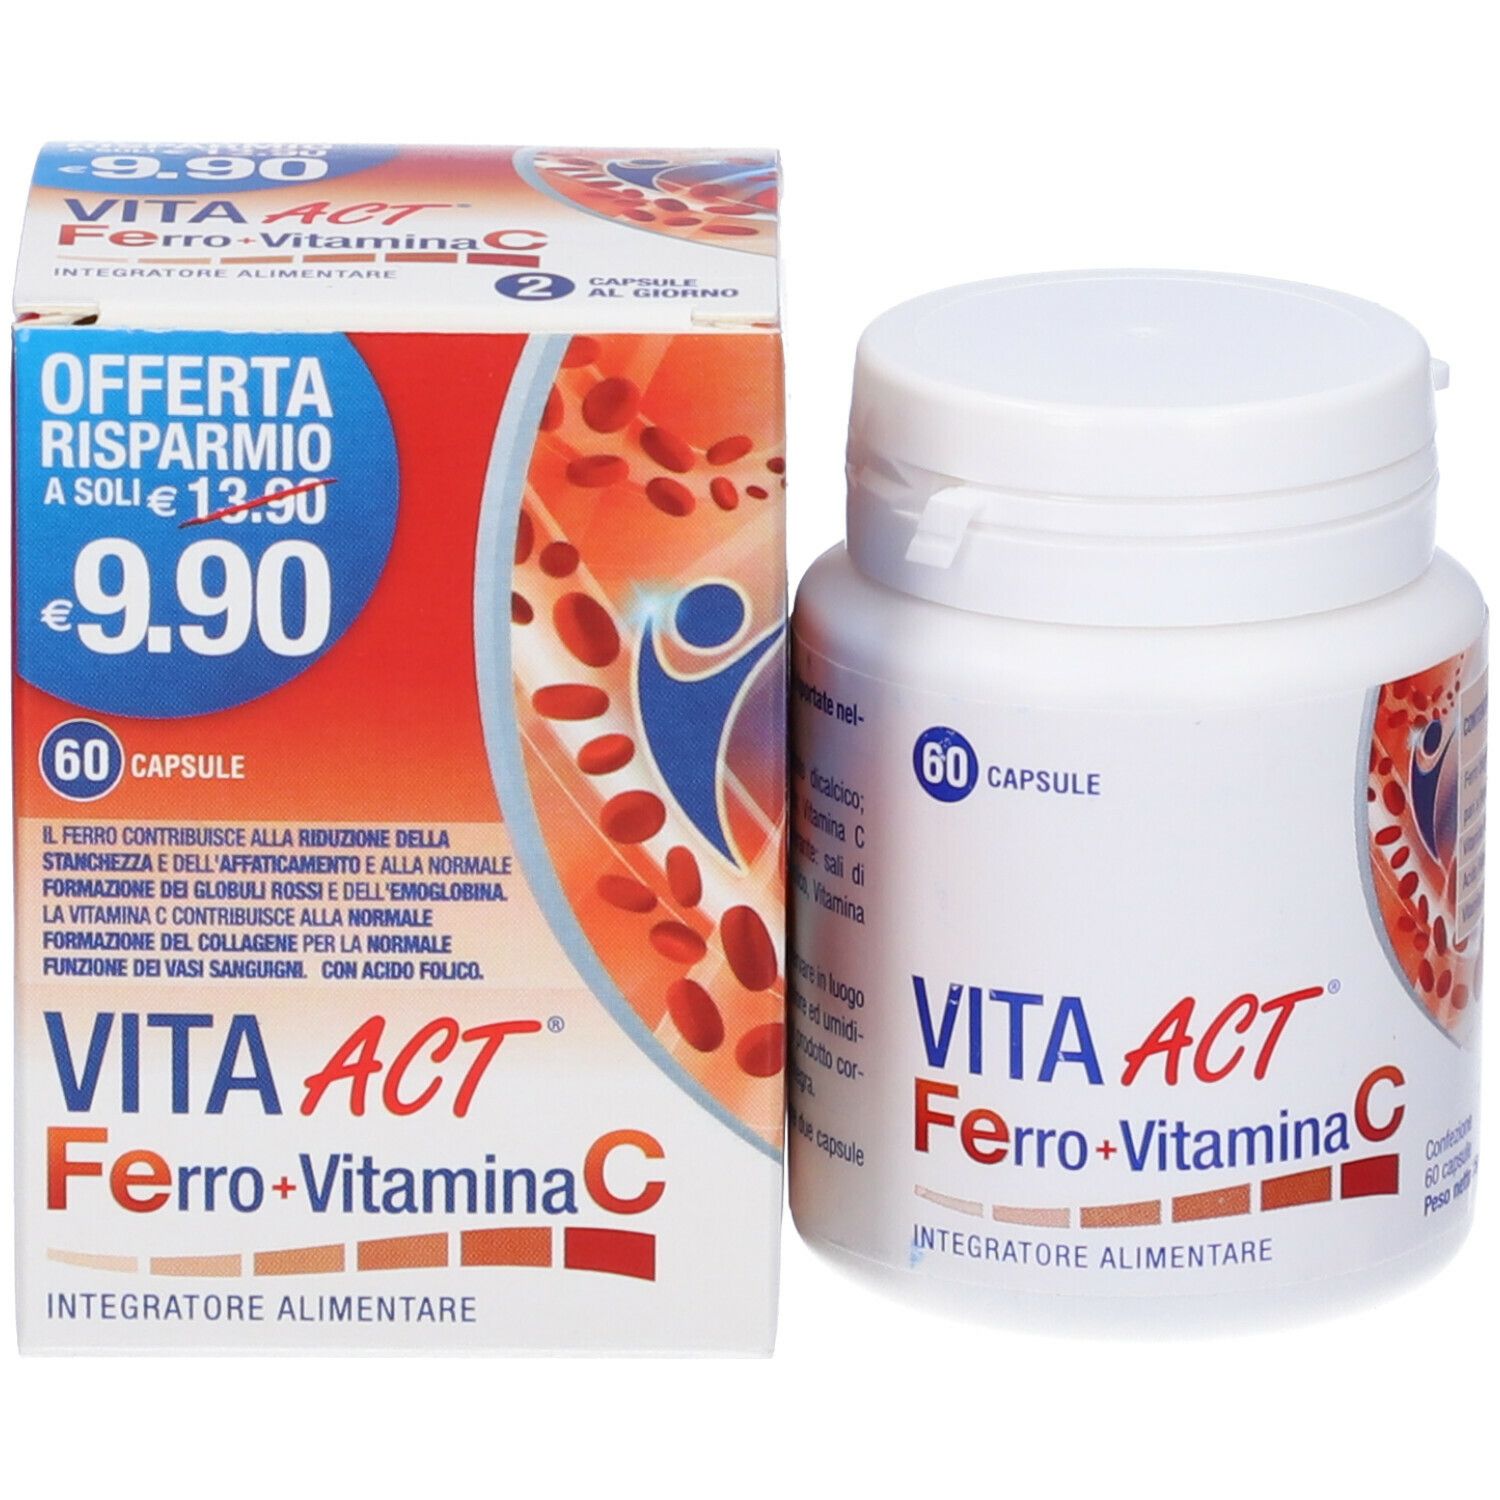 VITA ACT® Ferro + Vitamina C Integratore Alimentare